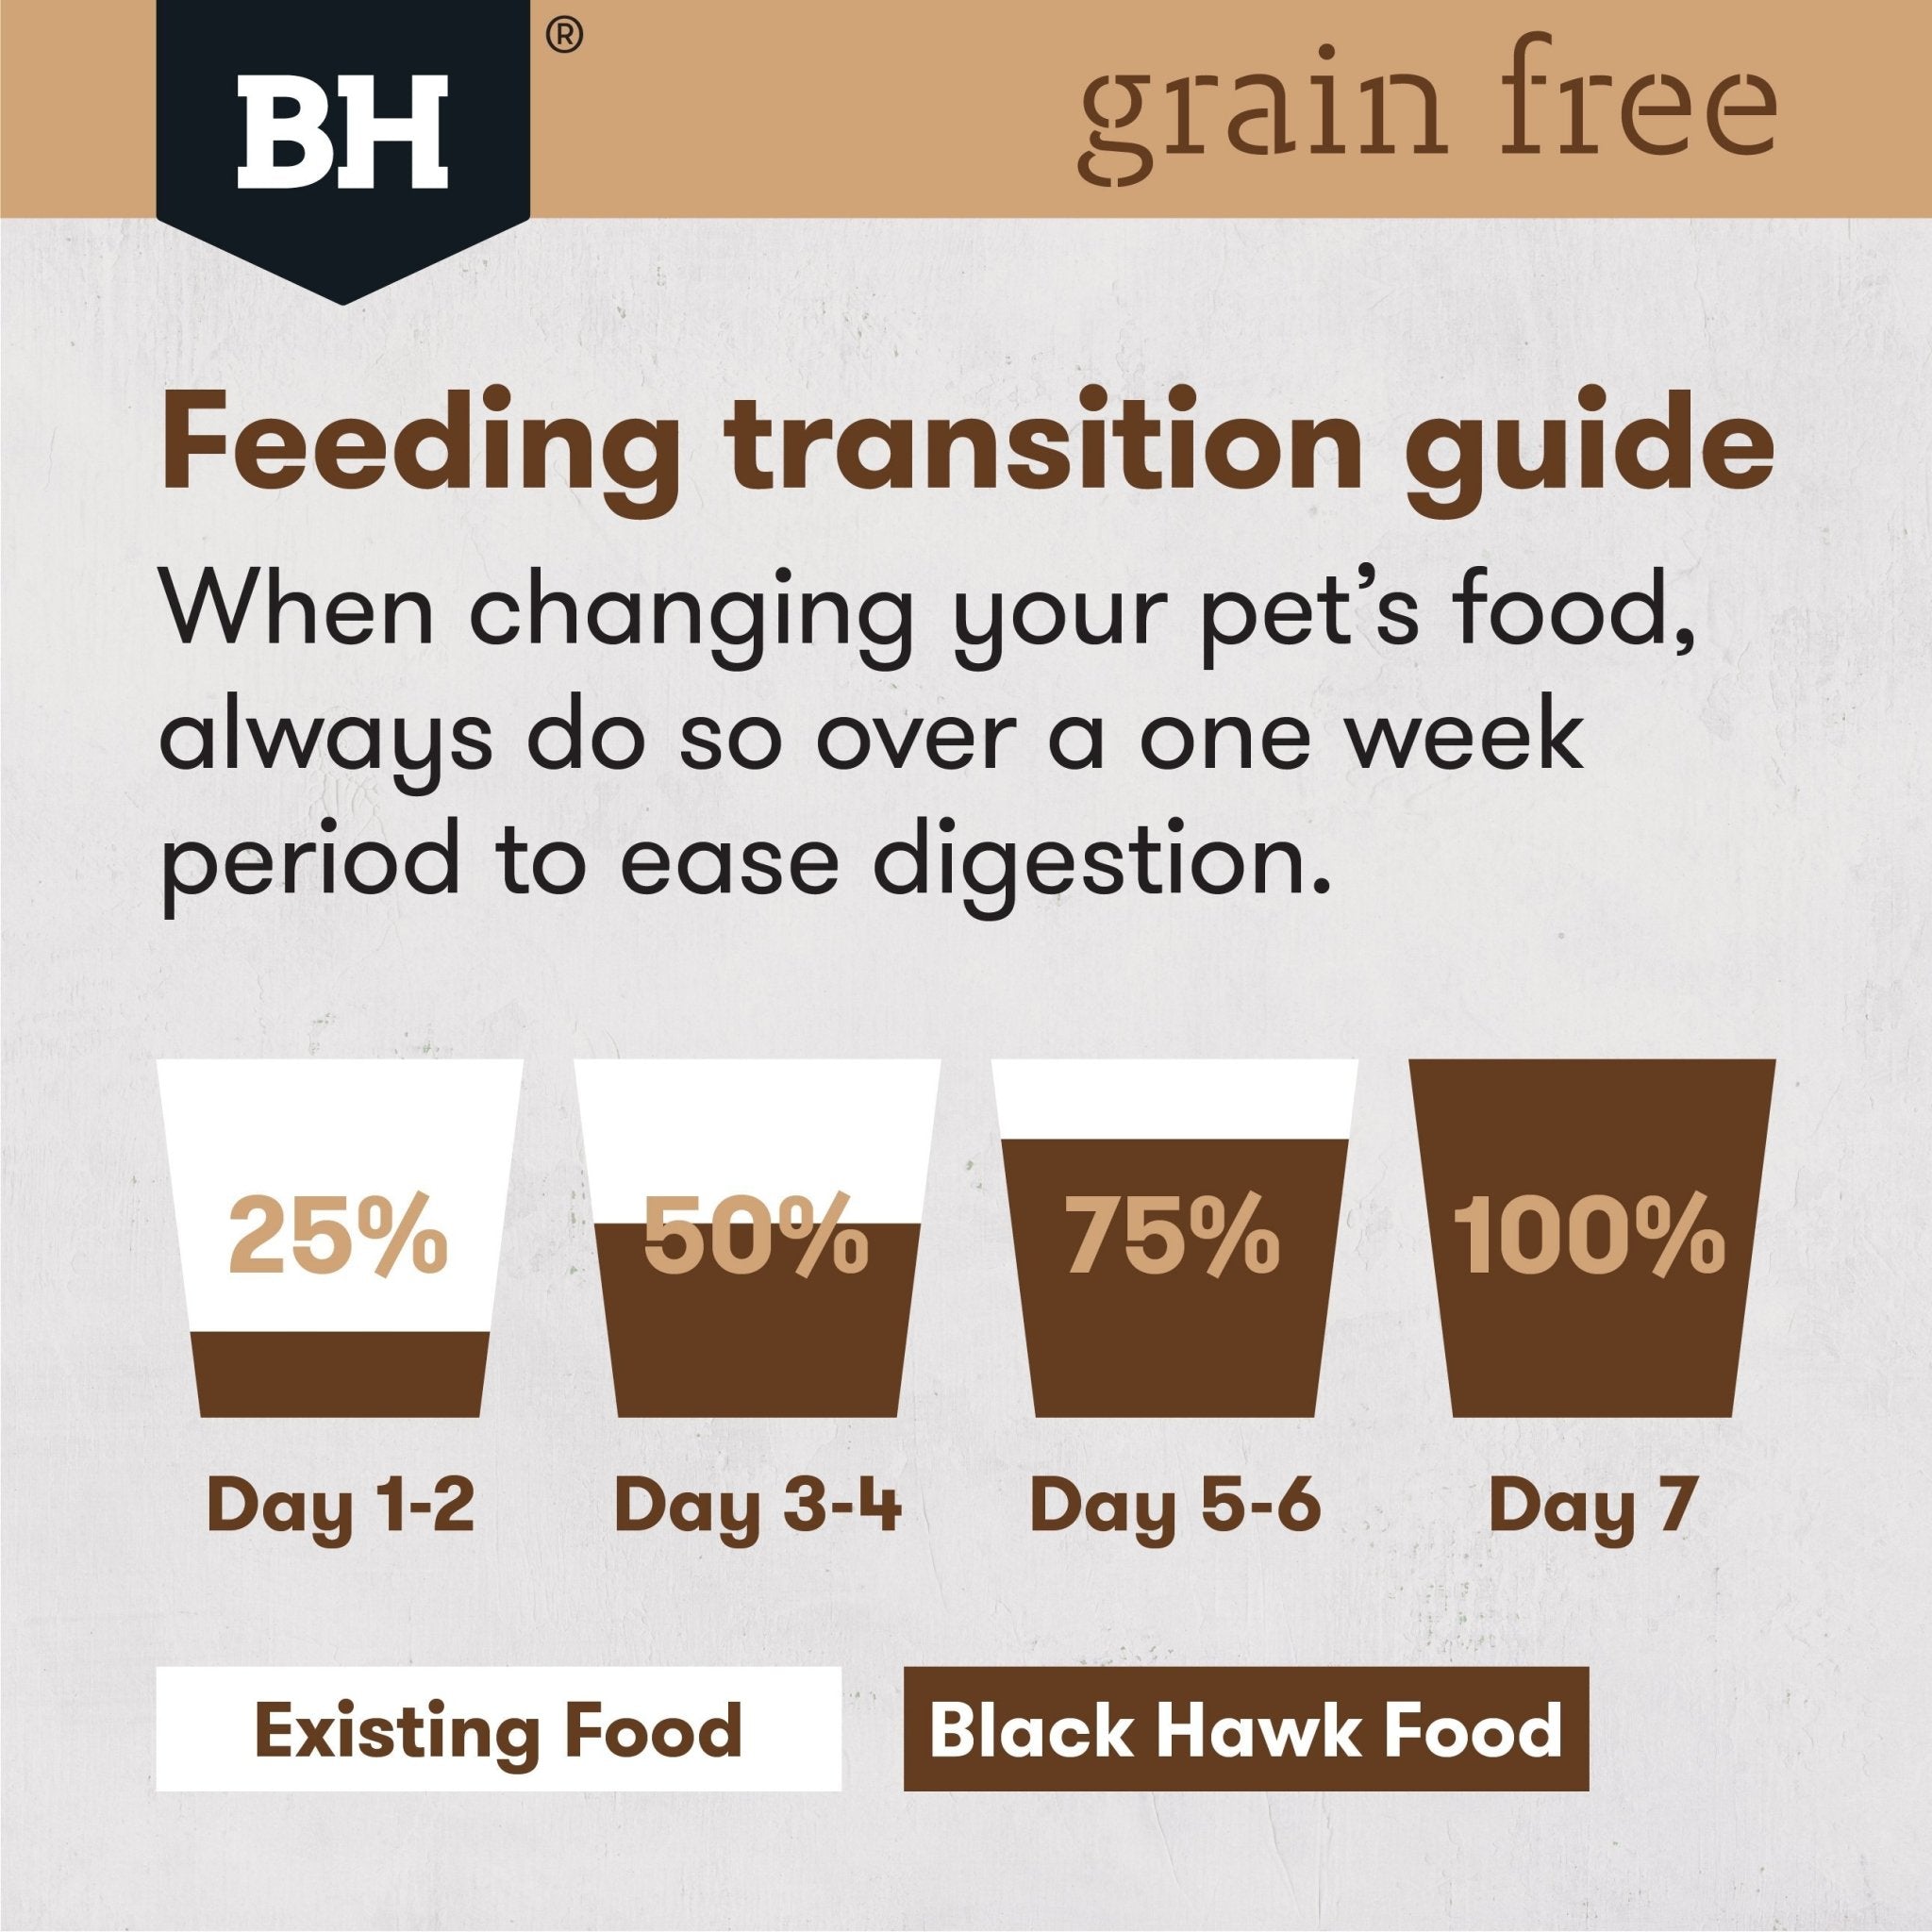 Black Hawk Grain Free Adult Kangaroo Dry Dog Food